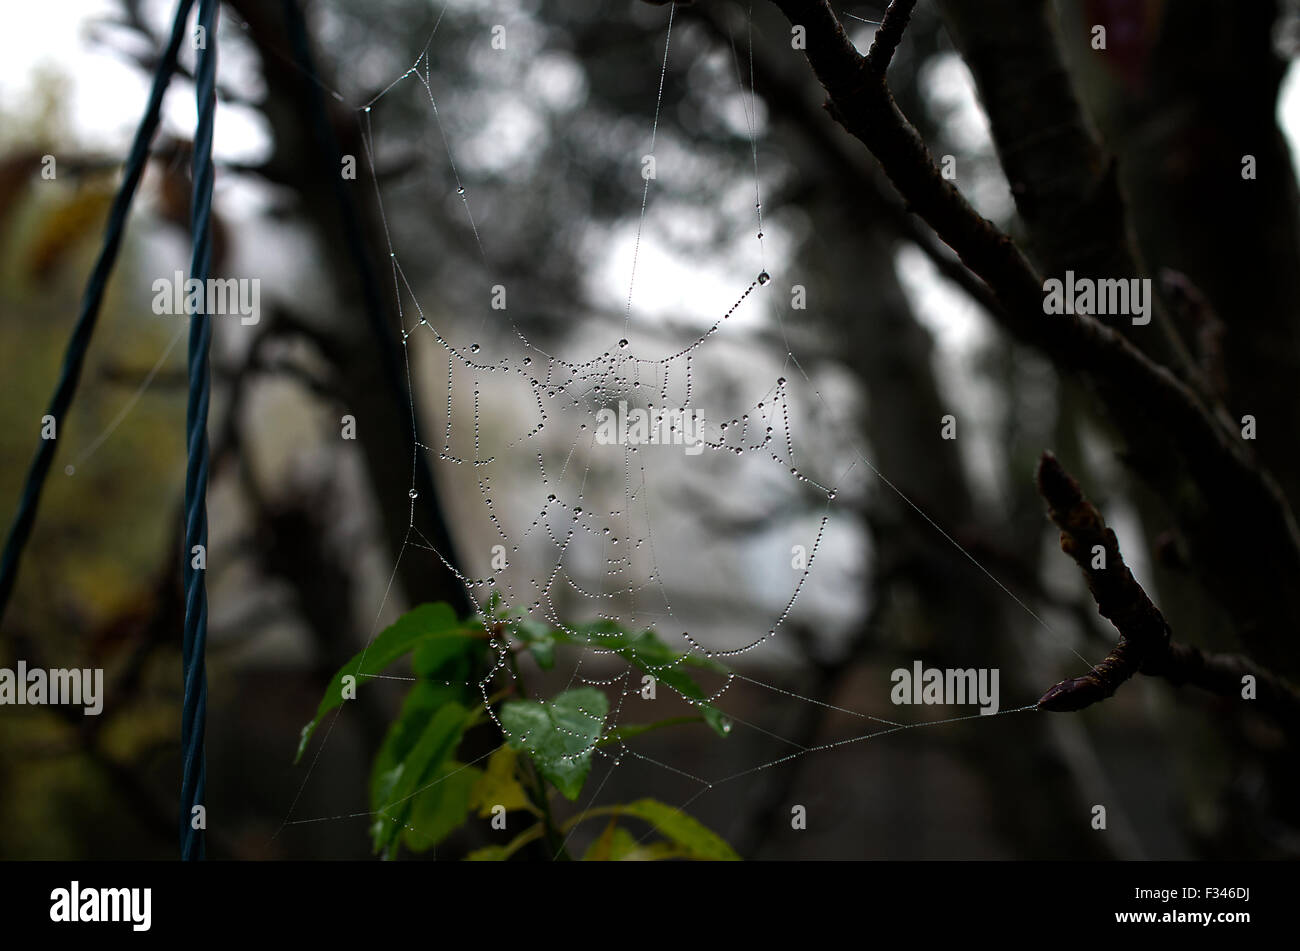 Zerfetzt, gebrochen Spider Web hängen an Bäumen und grünen Blättern Stockfoto